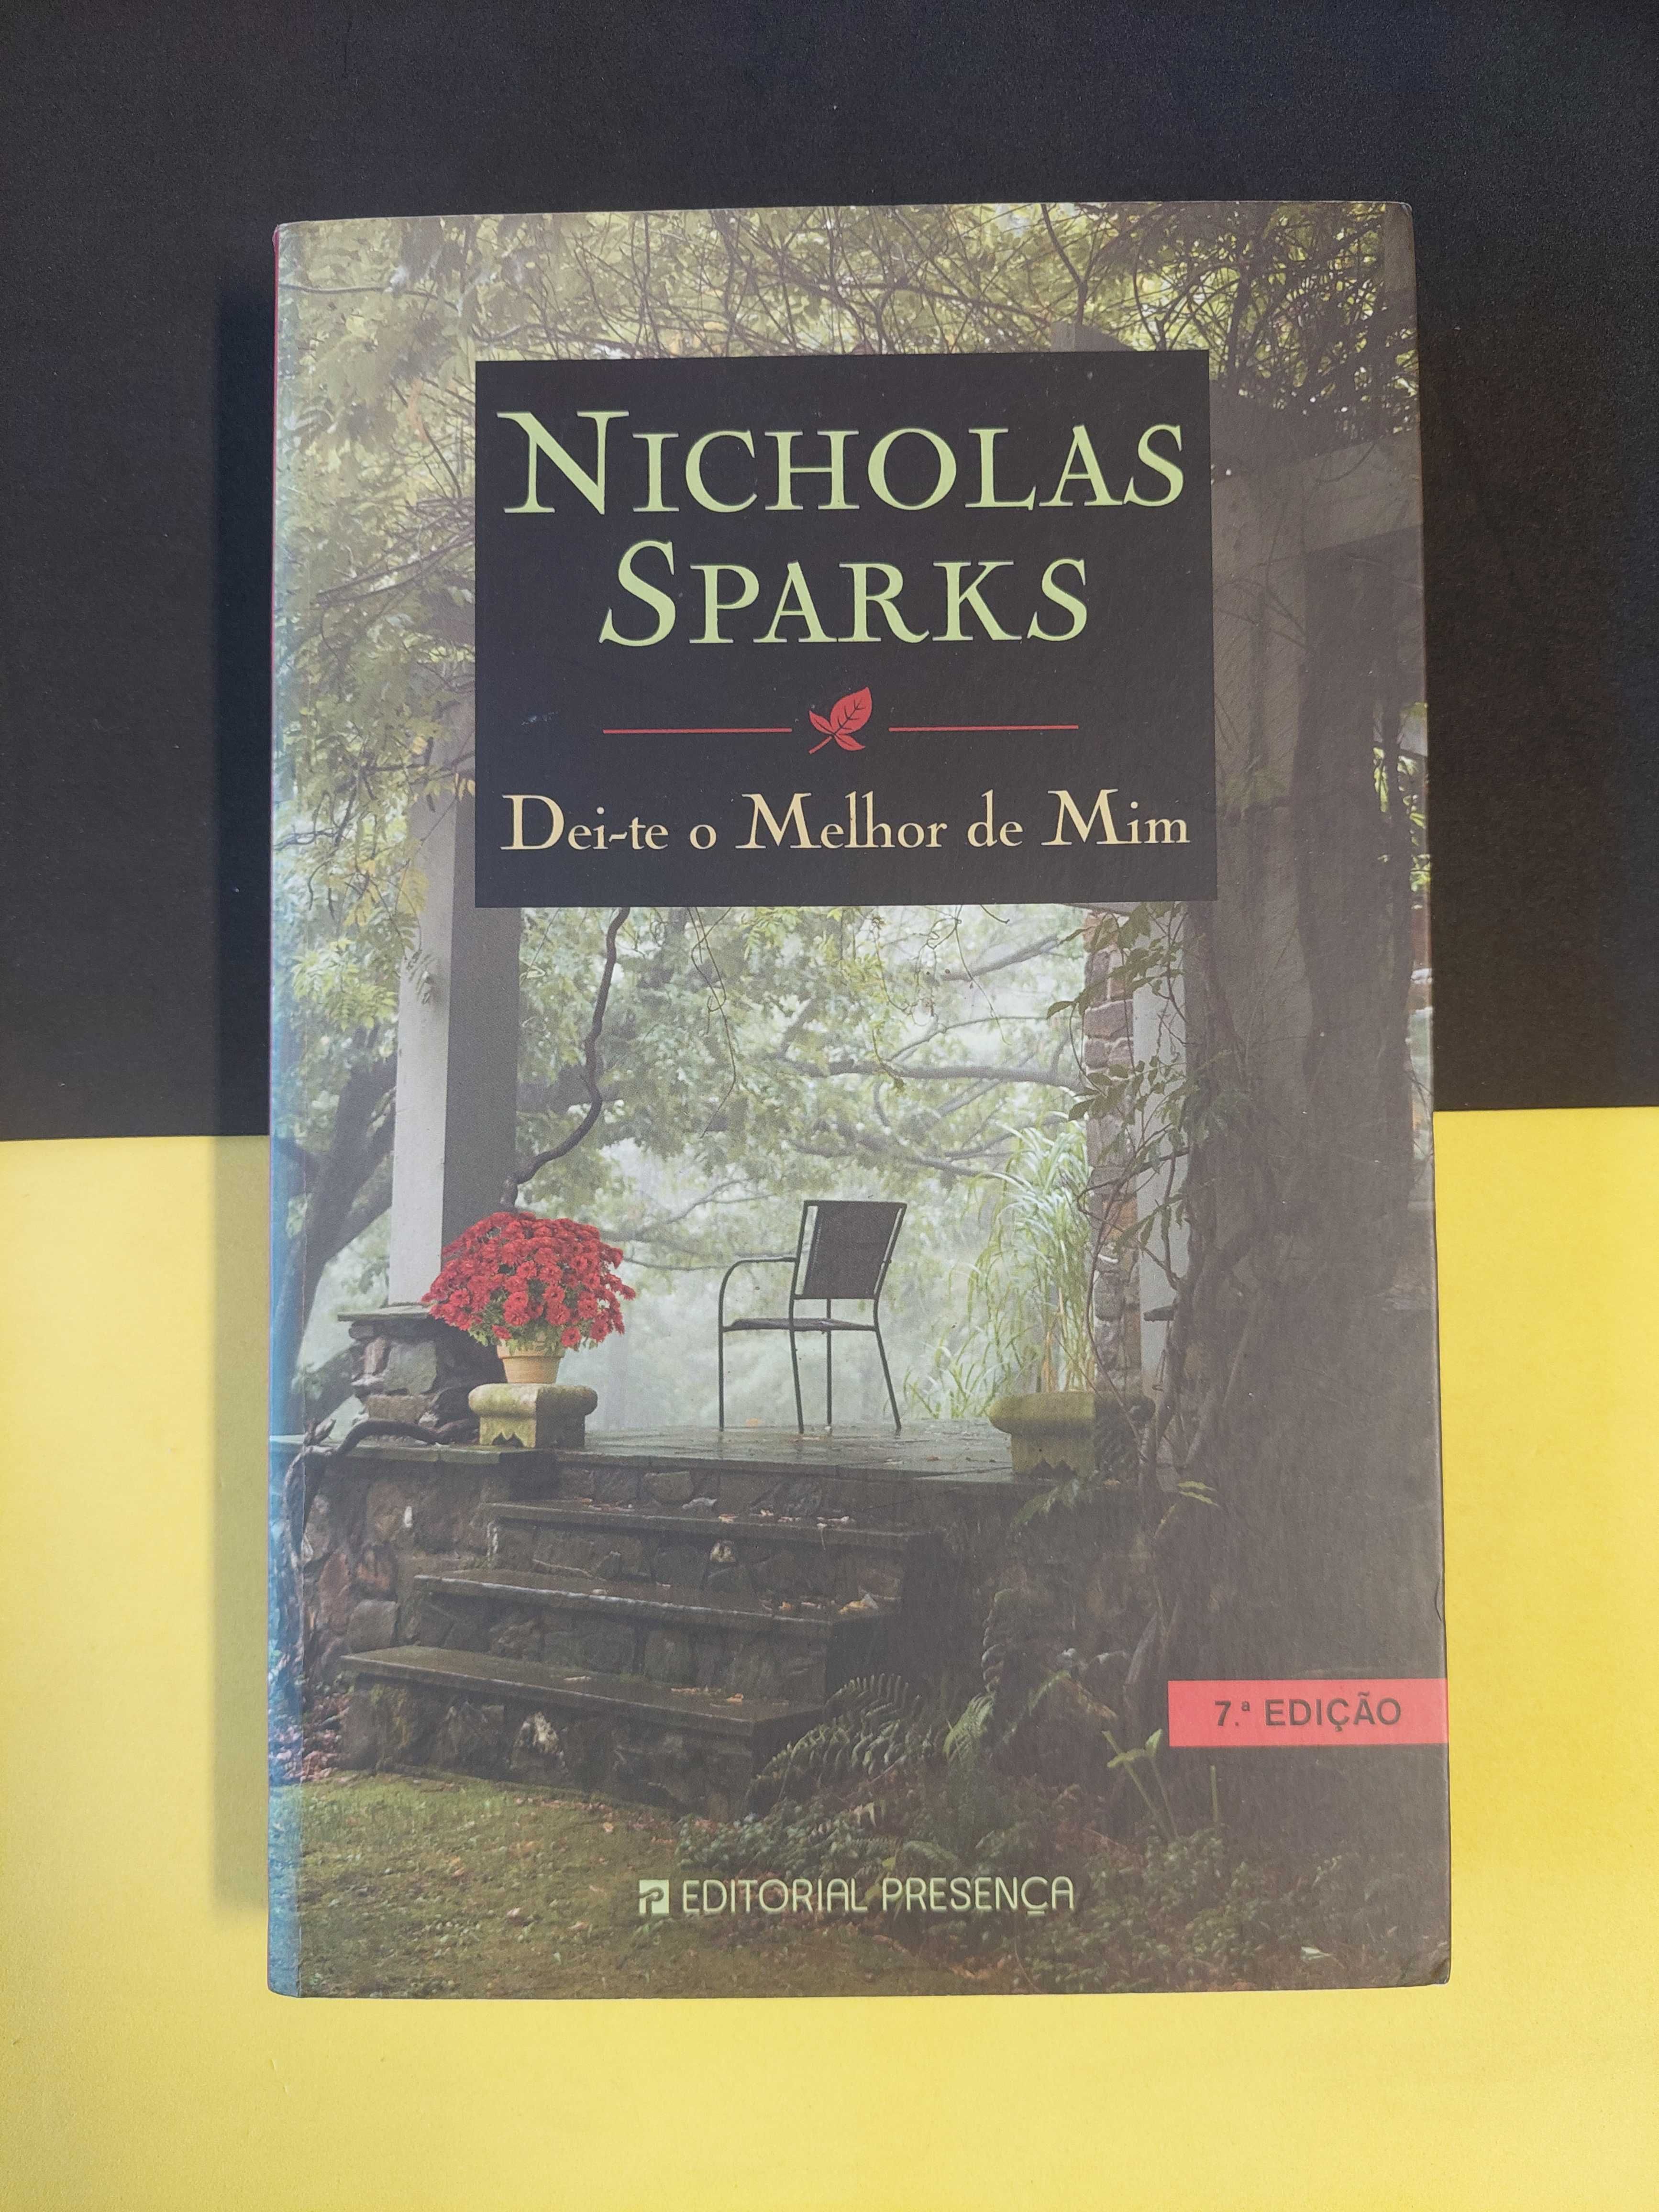 Nicholas Sparks - Dei-te o melhor de mim